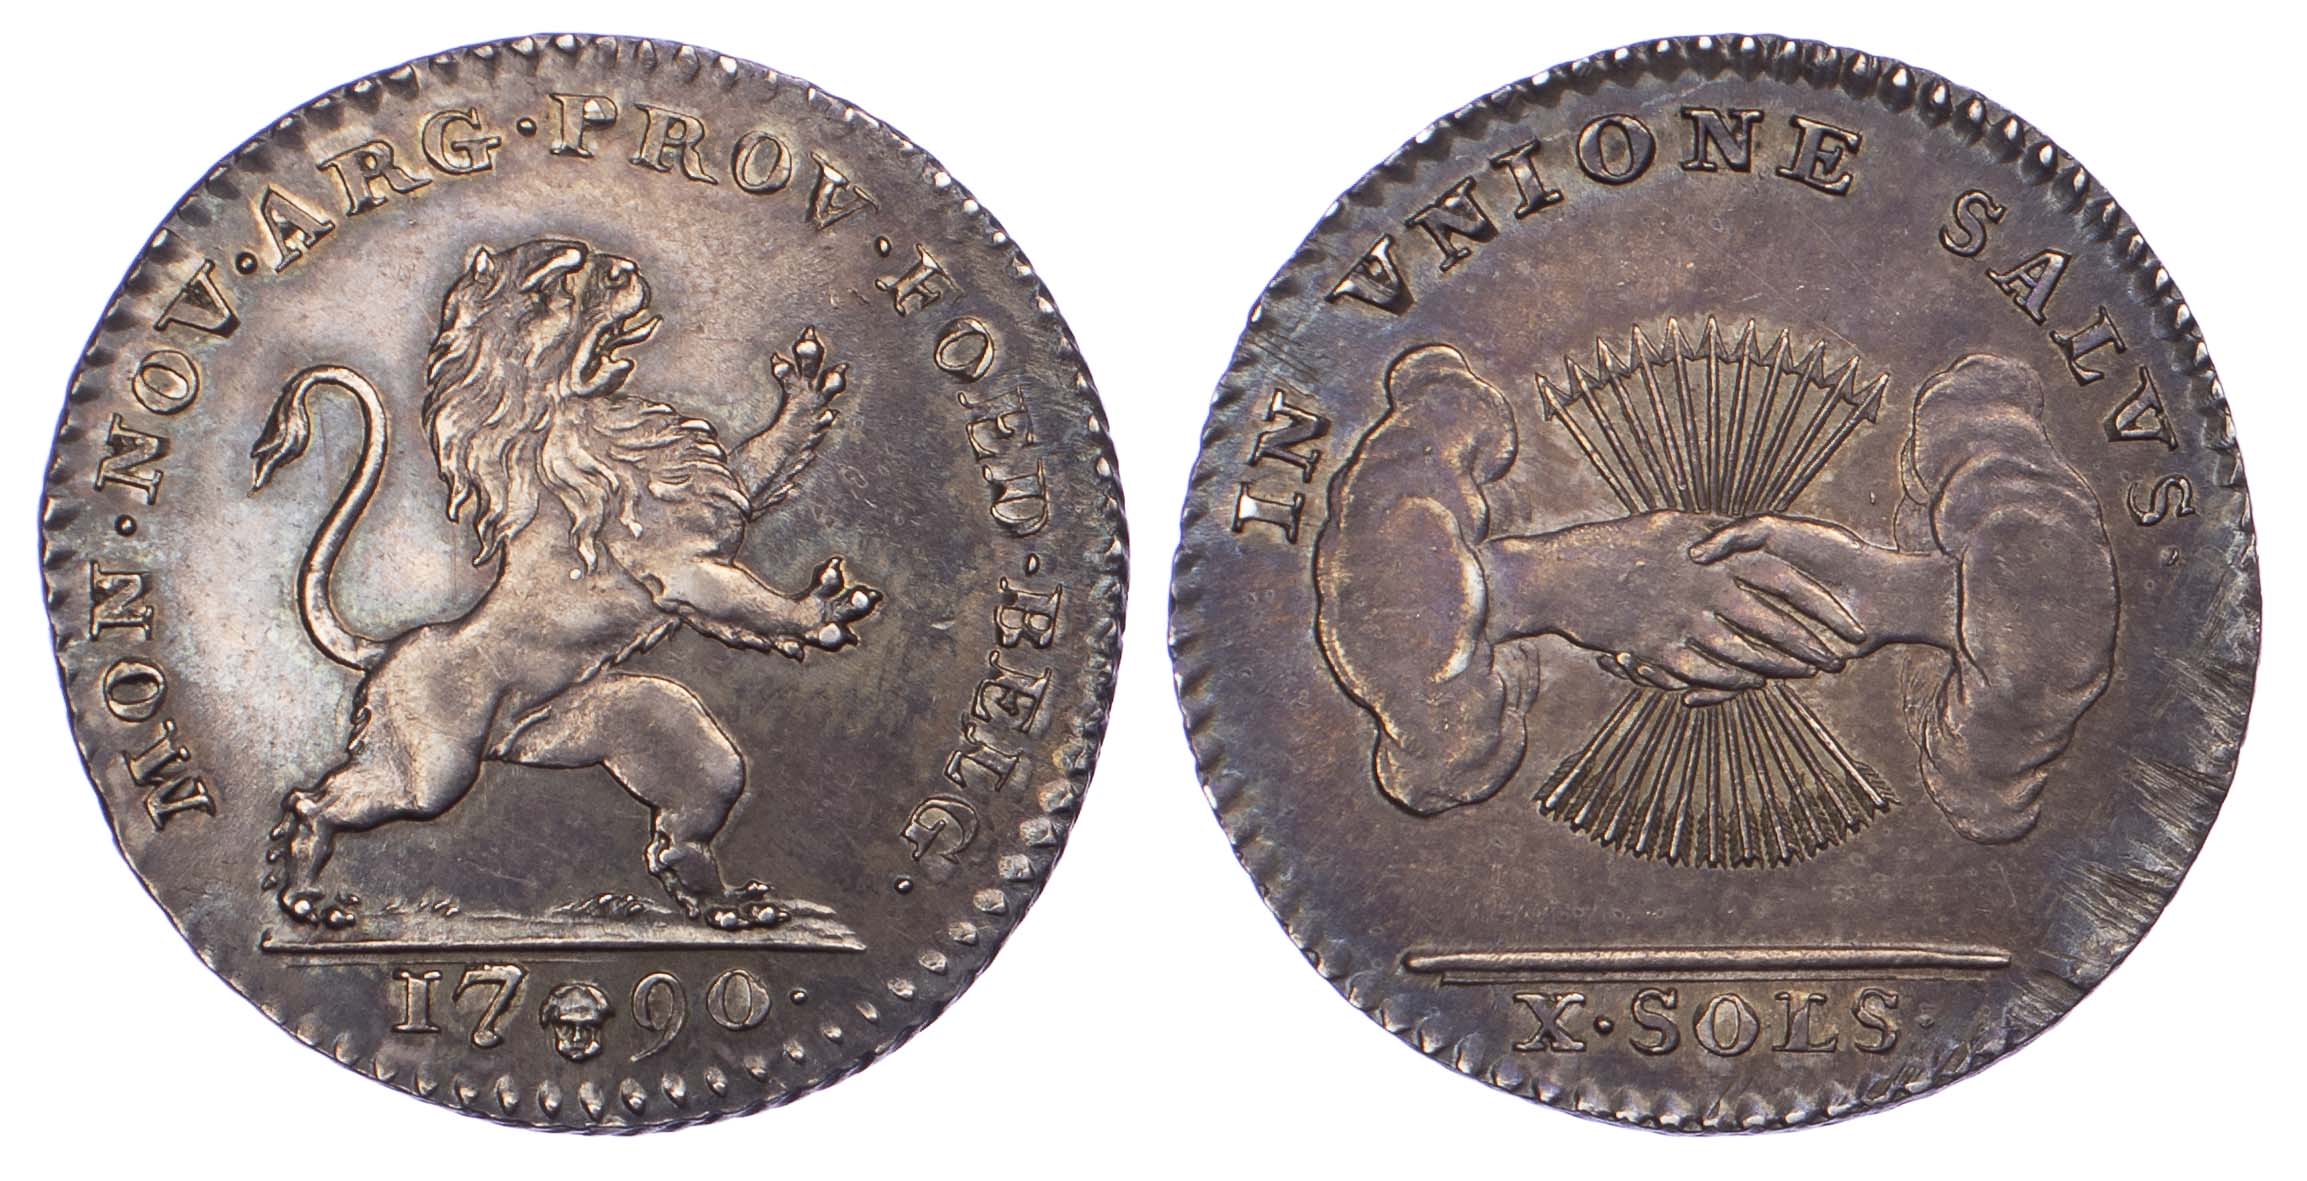 Belgium, United States of Belgium, Silver 10 Sols, 1790